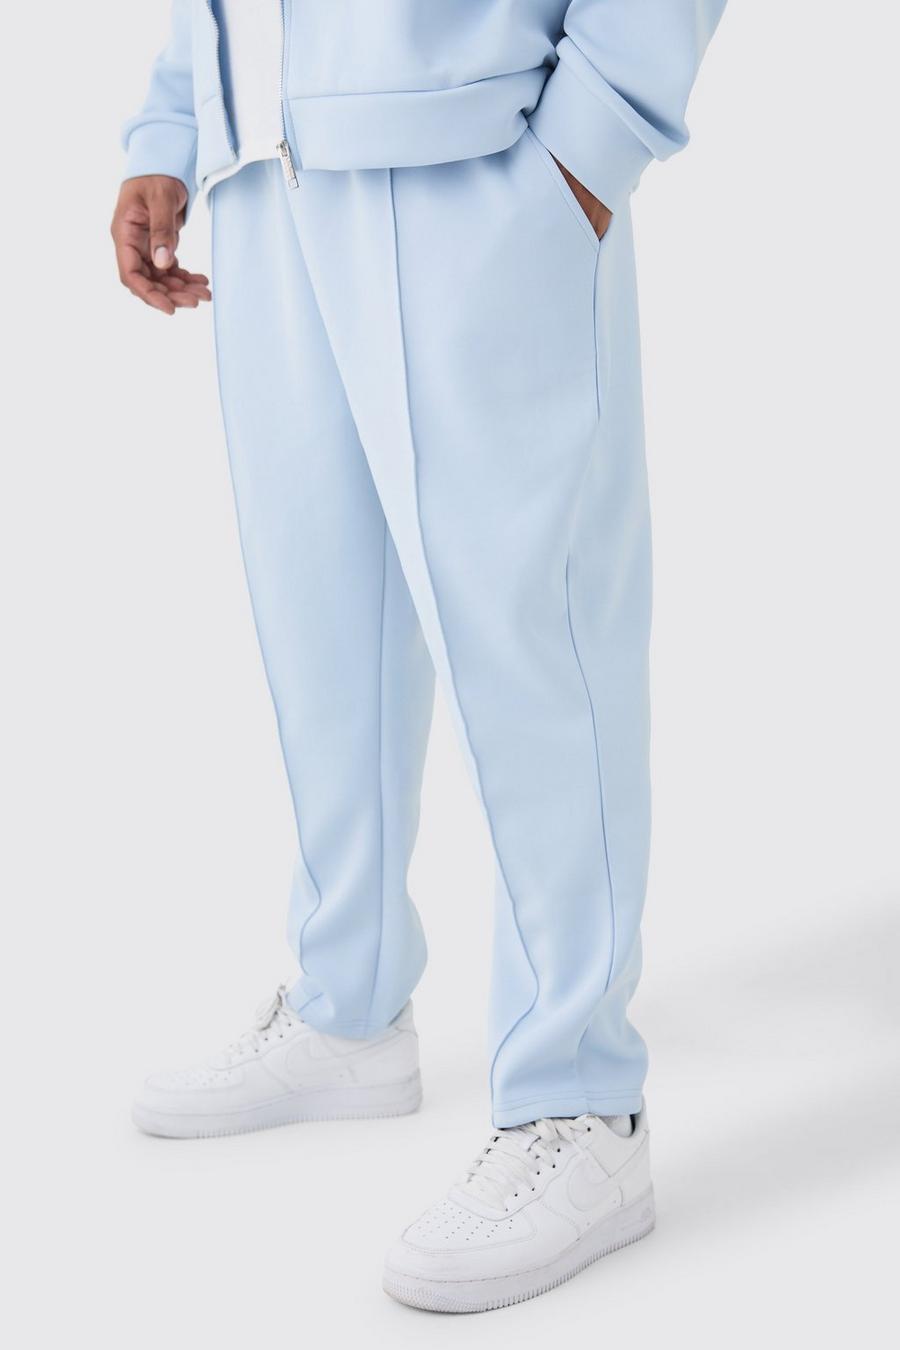 Pantaloni tuta Plus Size affusolati alla caviglia in Scuba, Light blue